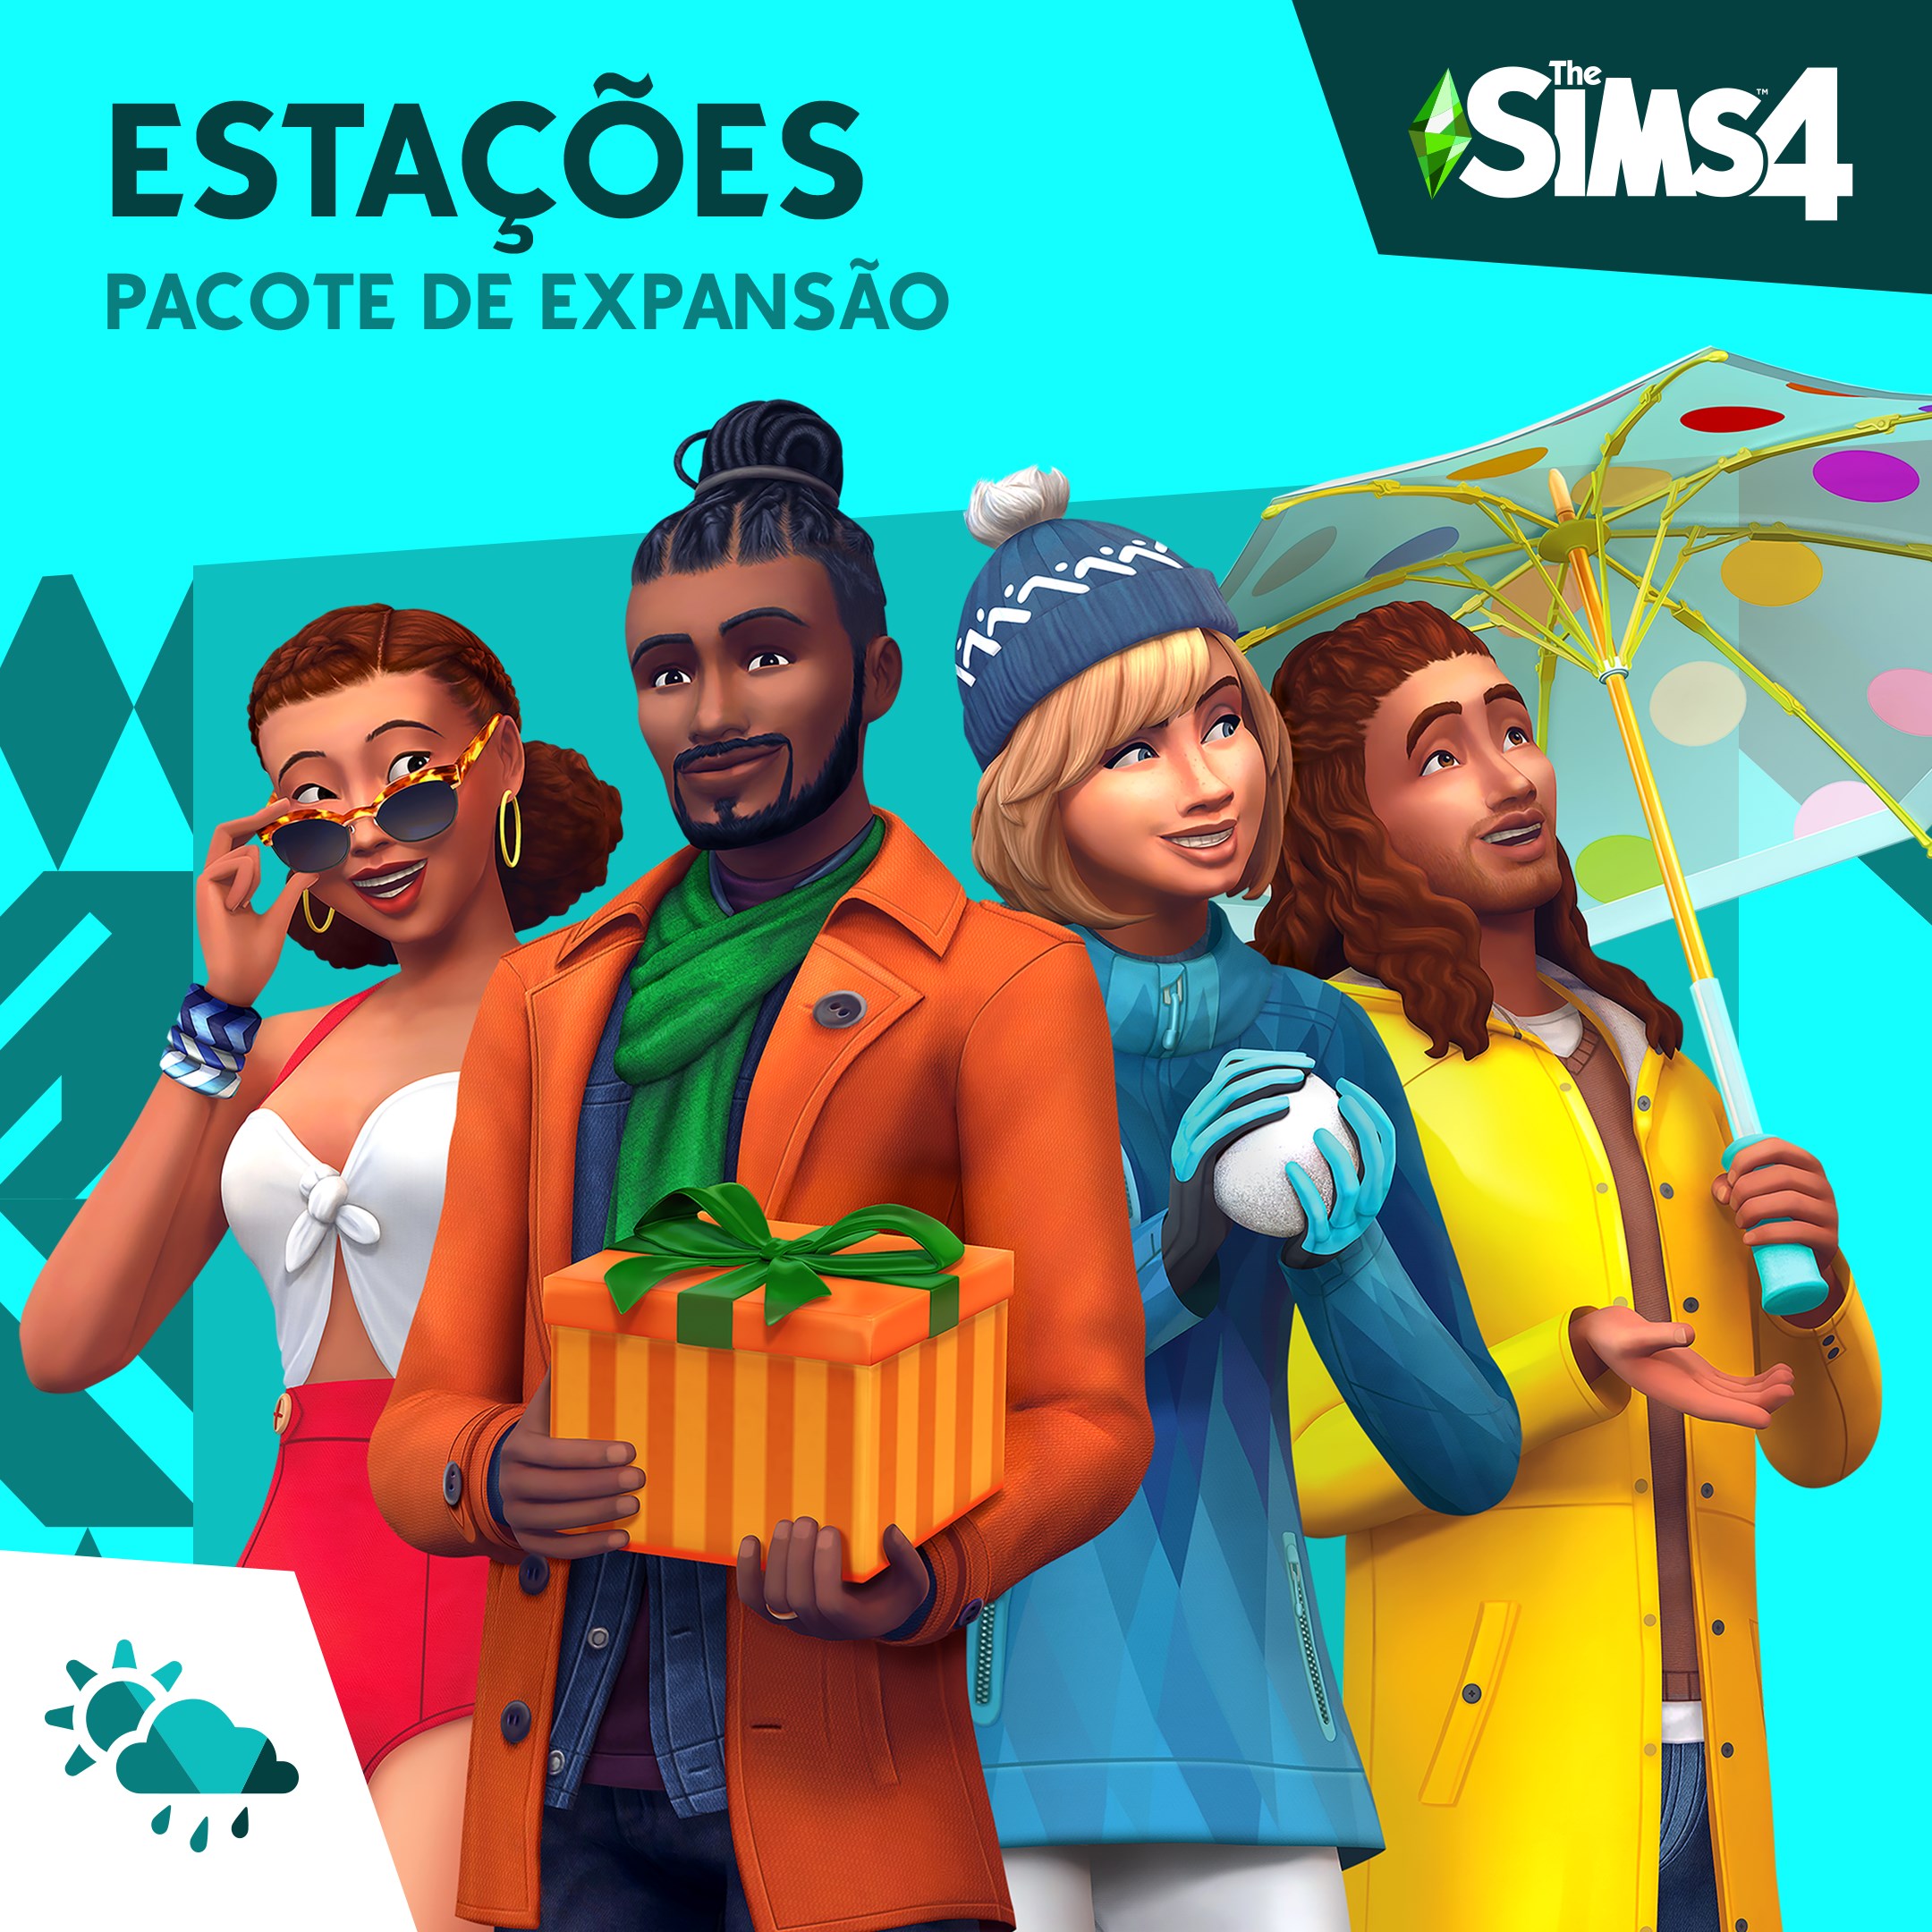 The Sims 4 Estações